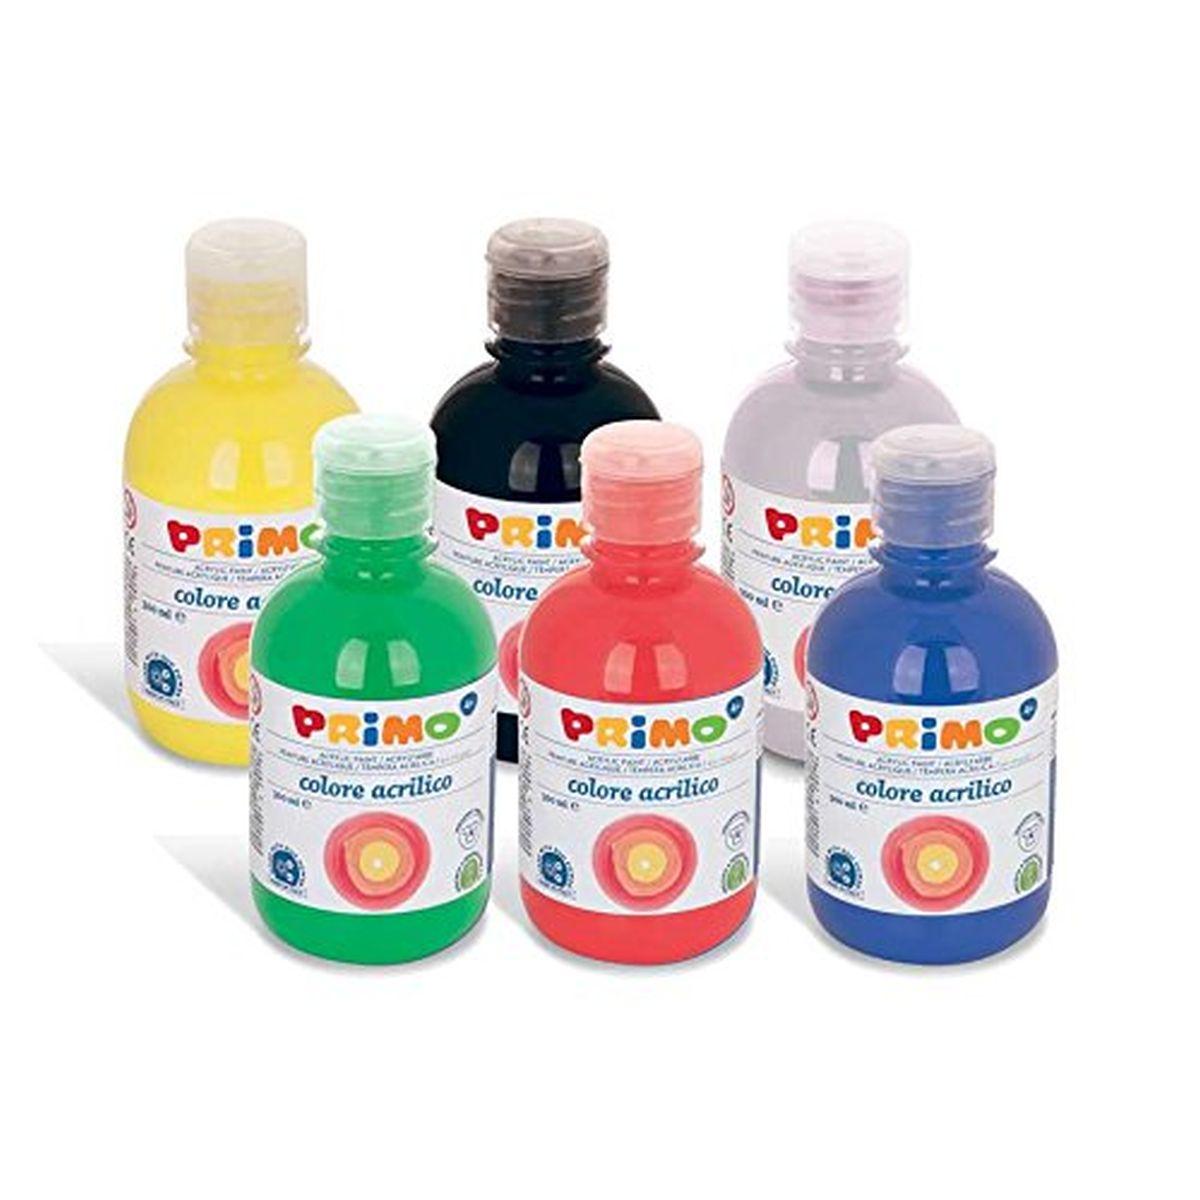 Primo - display colore acrilico - 6 bottiglie con tappo dosatore da 300 ml -